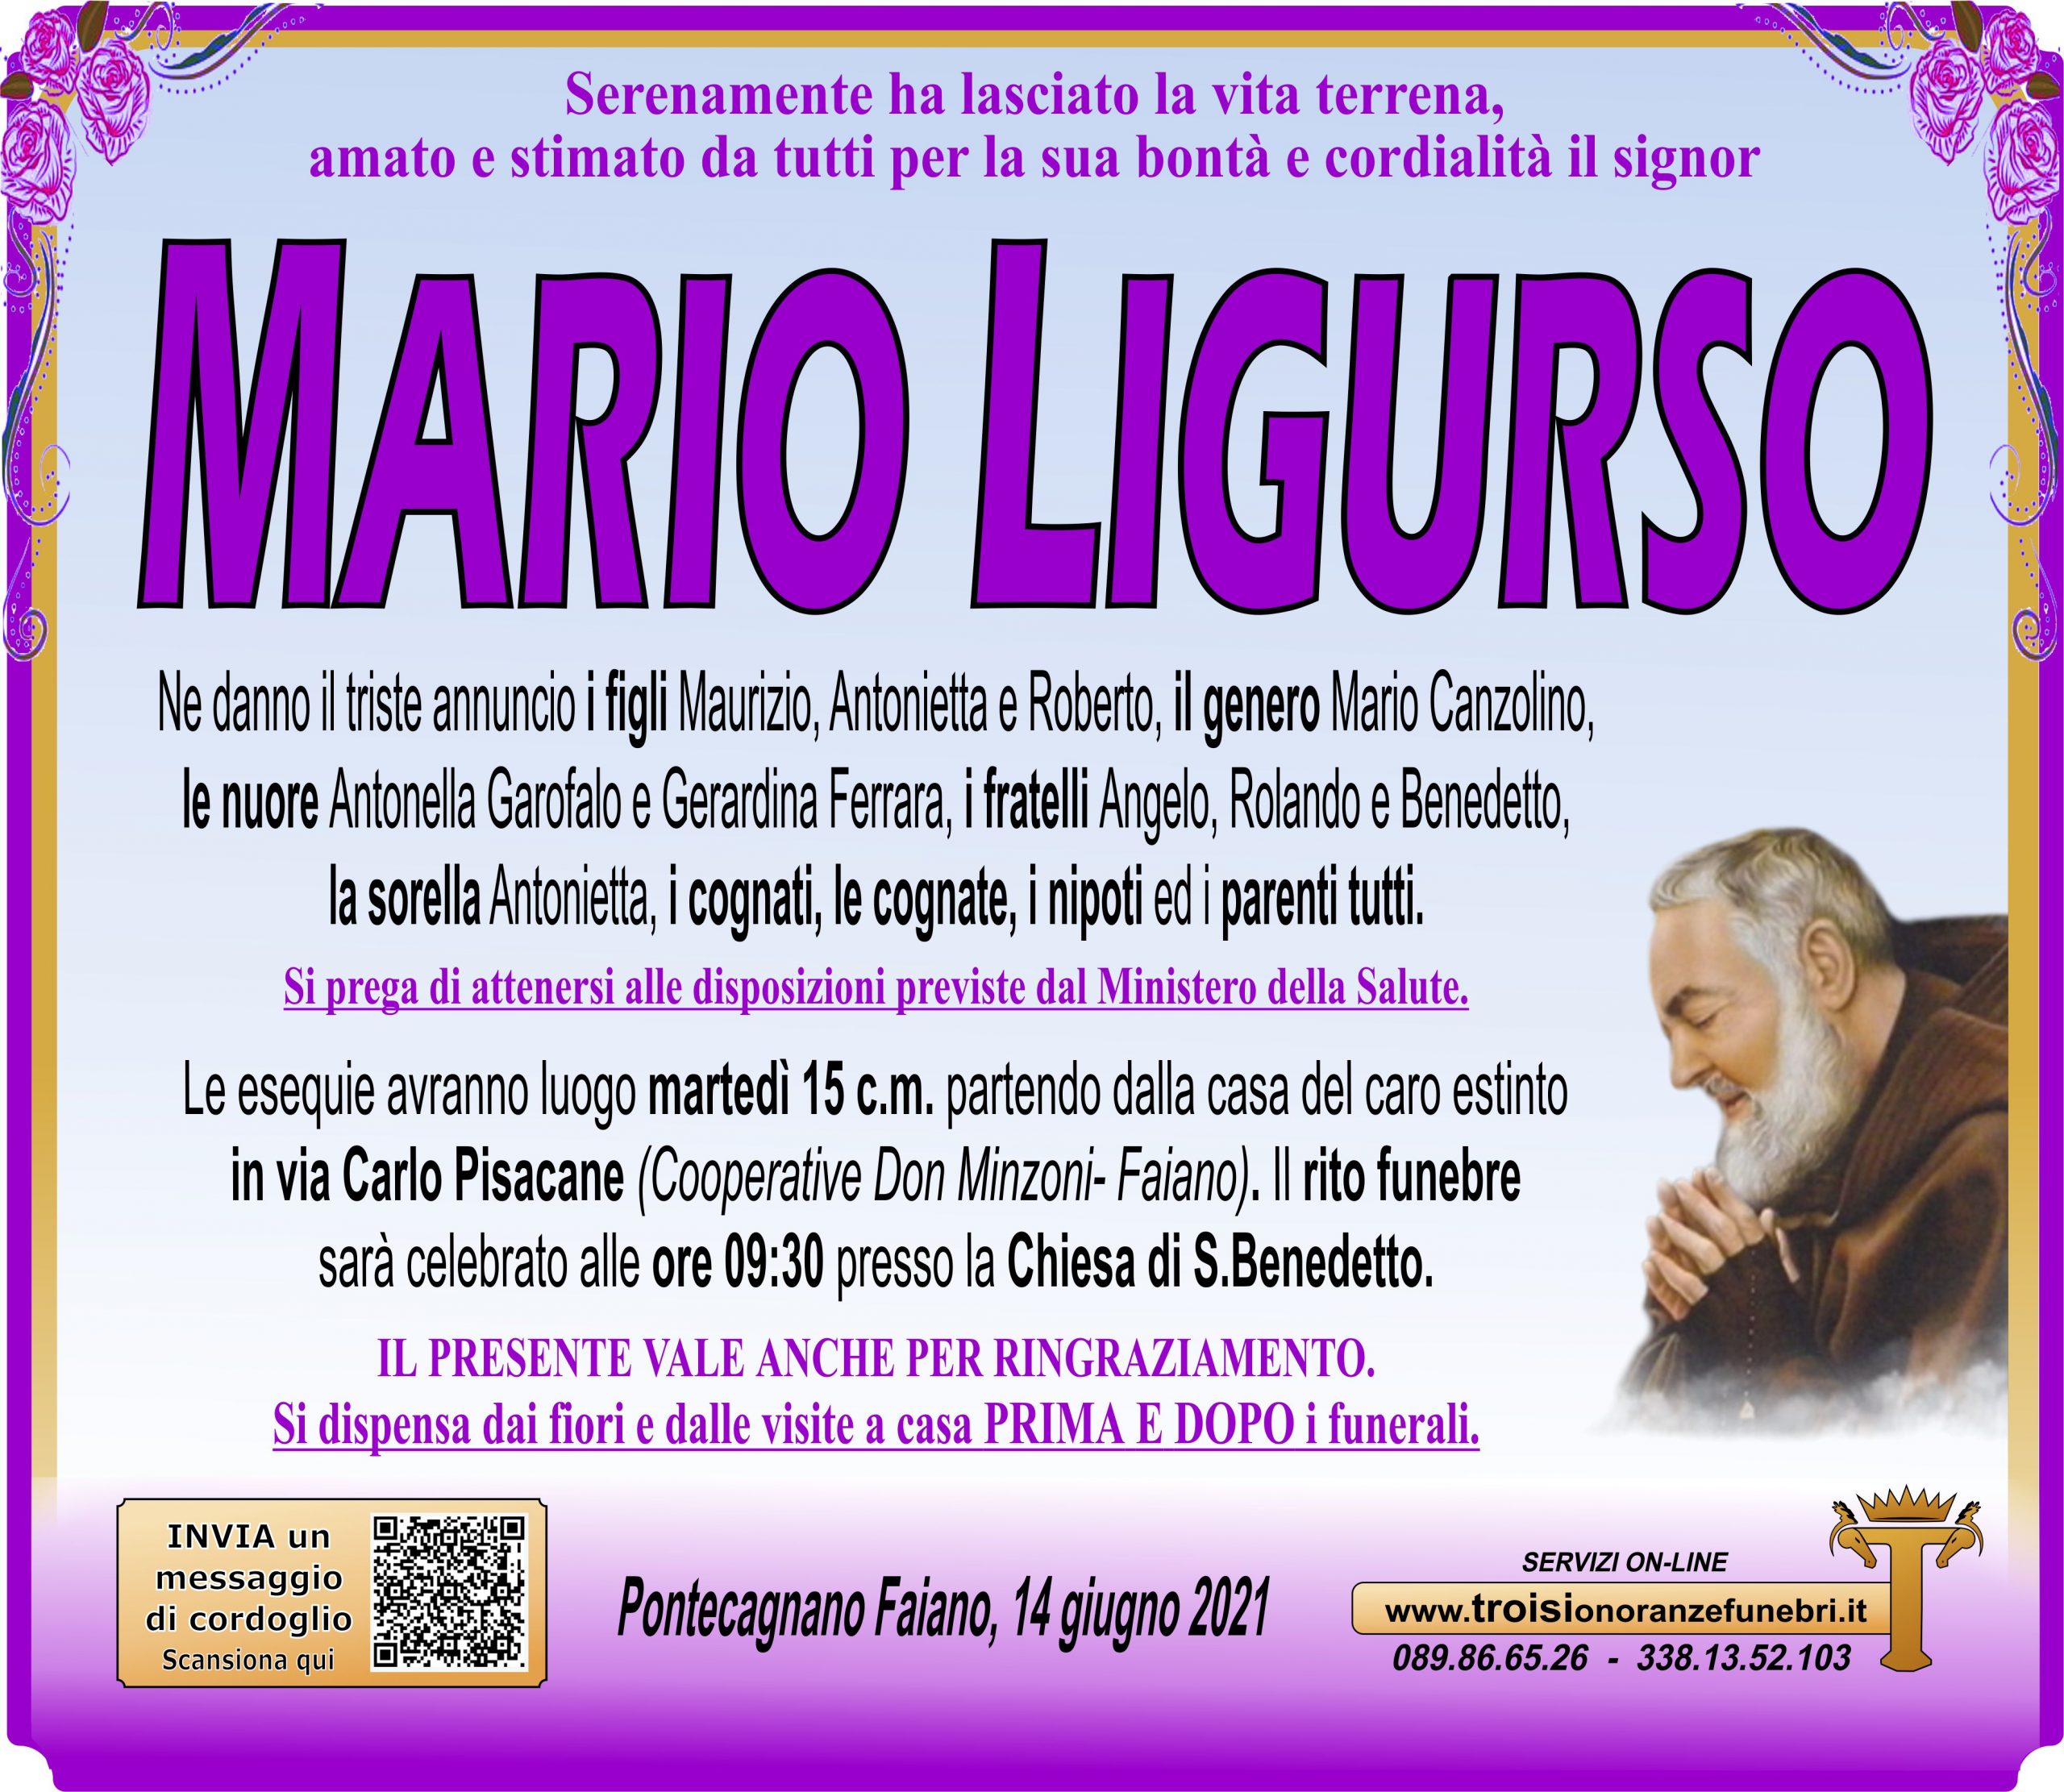 MARIO LIGURSO